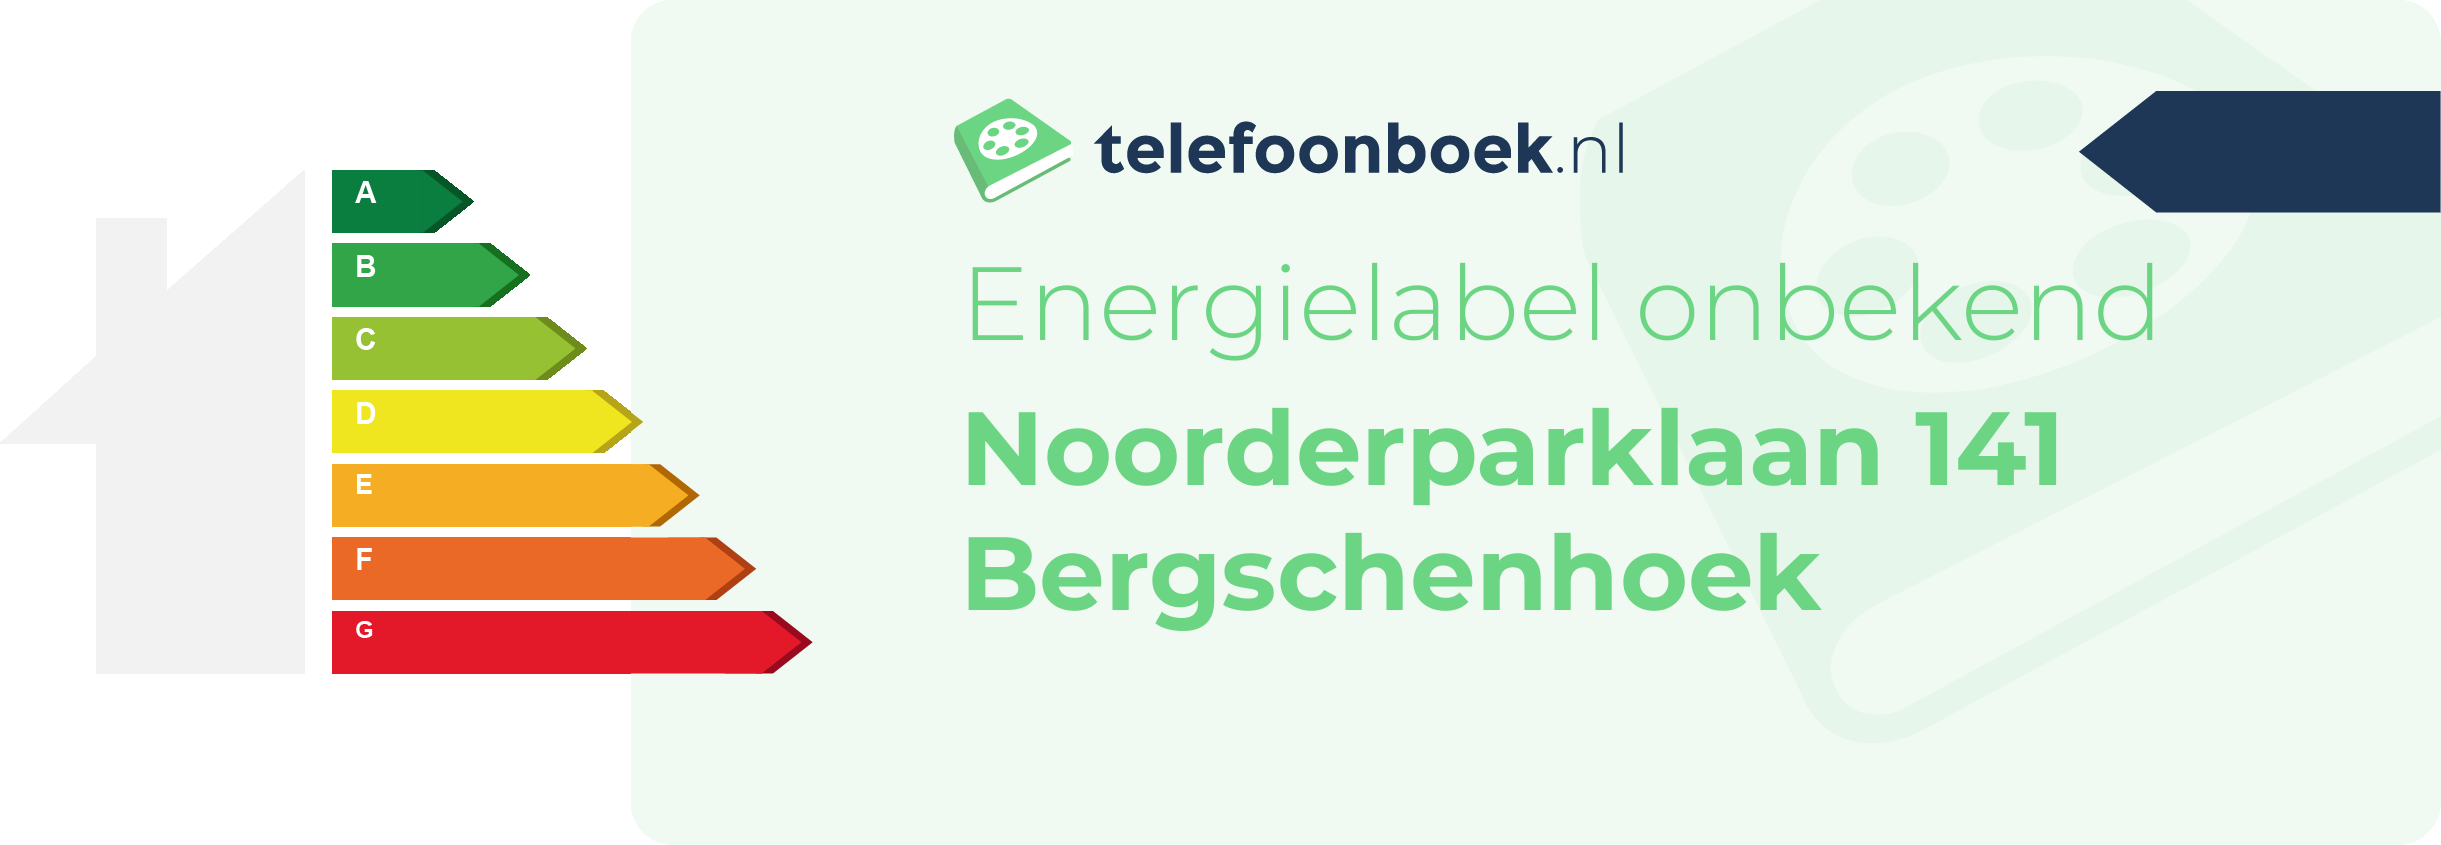 Energielabel Noorderparklaan 141 Bergschenhoek